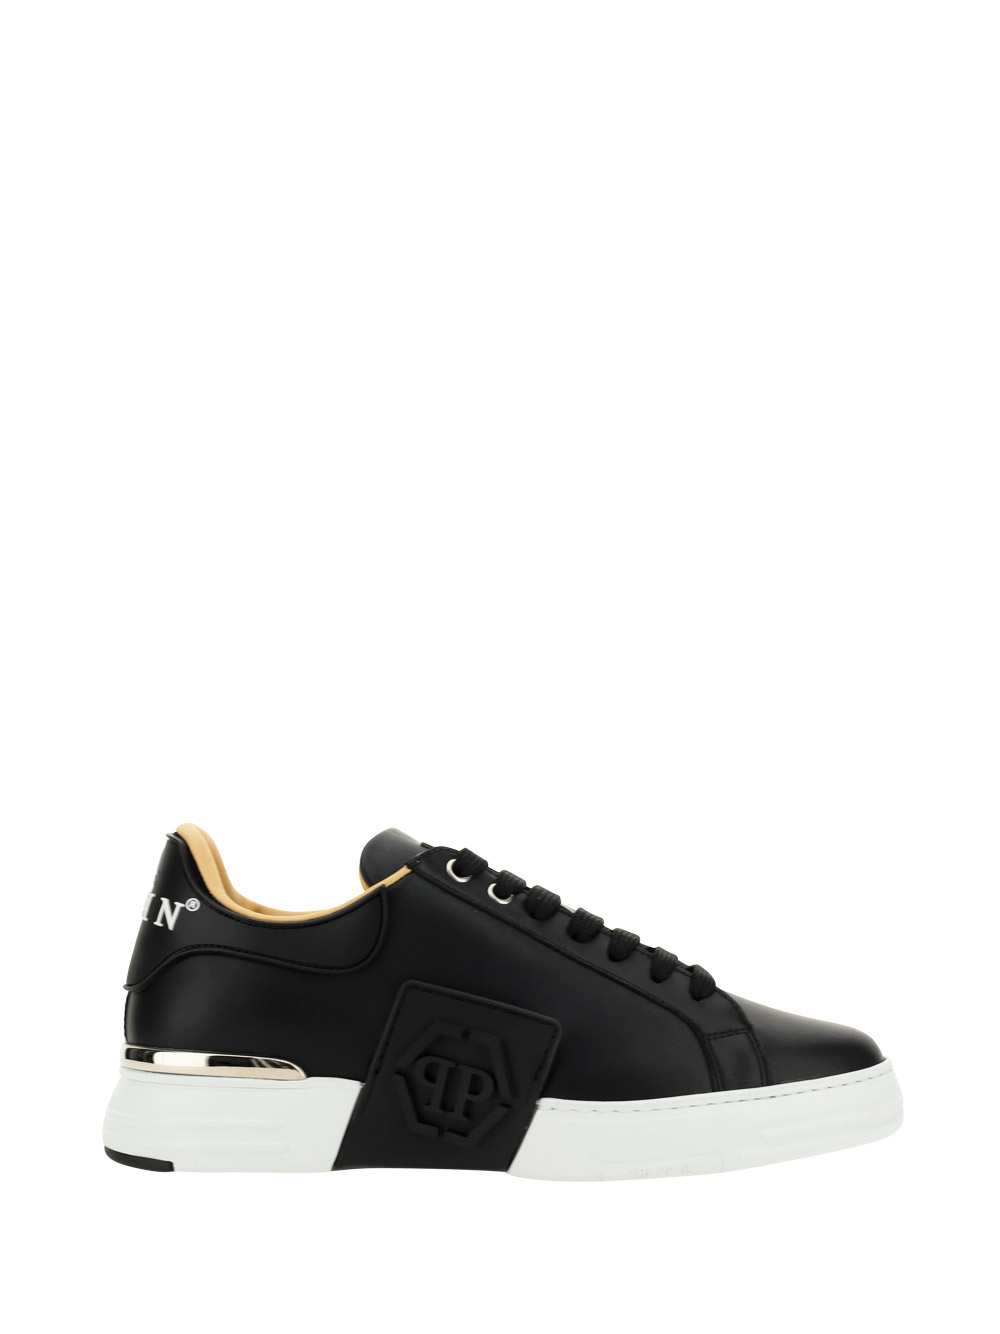 Philipp Plein Sneakers Hexagon In Black/white